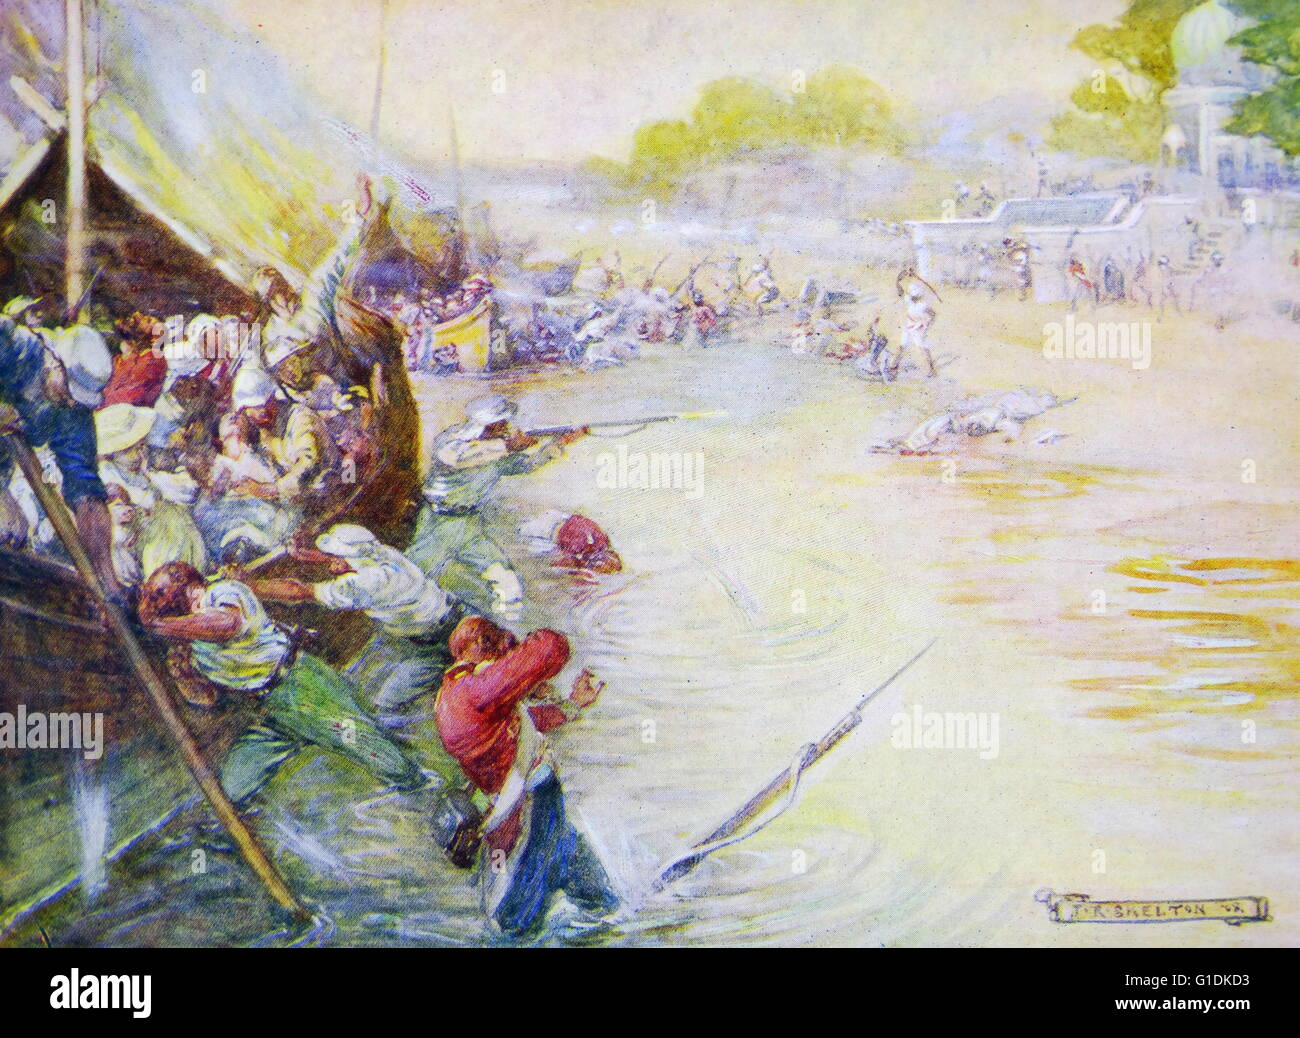 Dipinto raffigurante i soldati e le loro barche bloccato nel fango da Joseph Ratcliffe Skelton (1865-1888) artista britannico. Datata 1880 Foto Stock